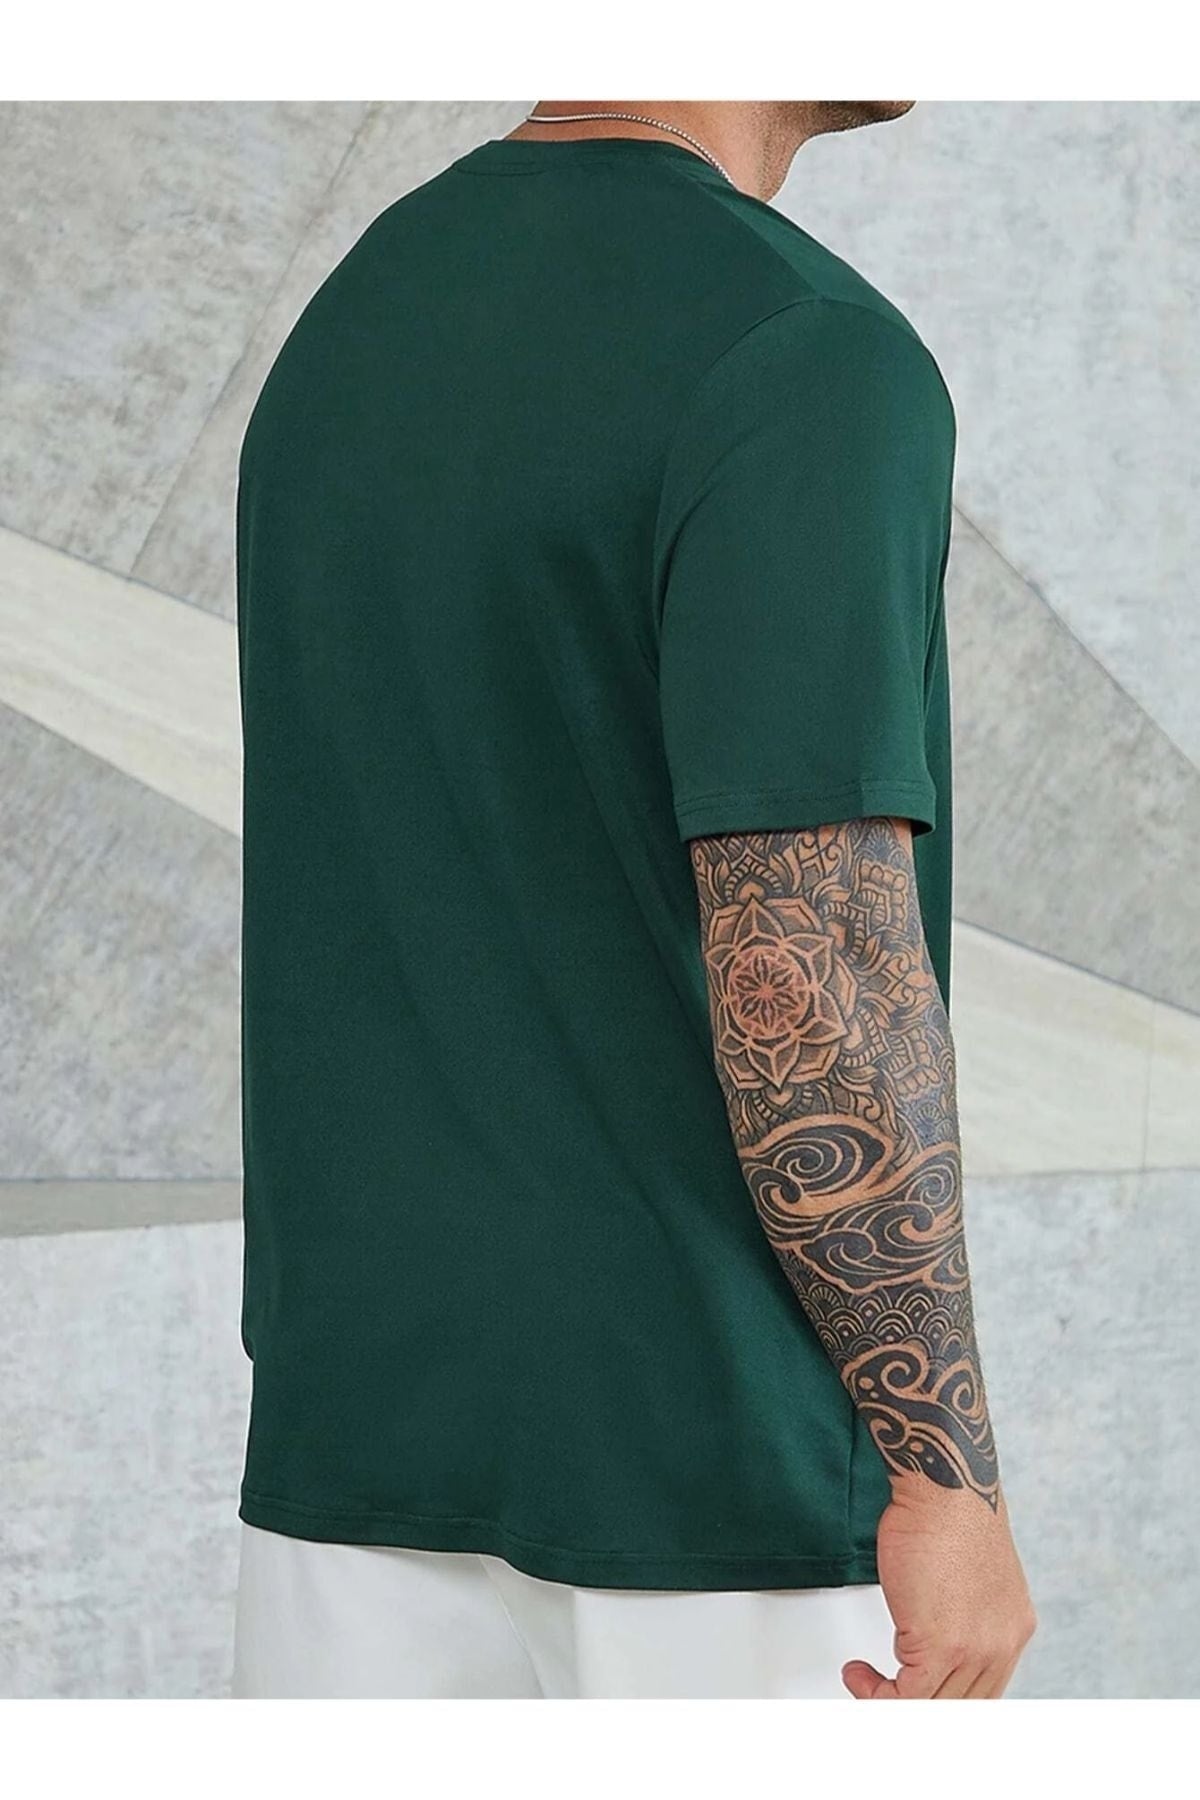  Мужская зеленая футболка оверсайз с принтом Believe